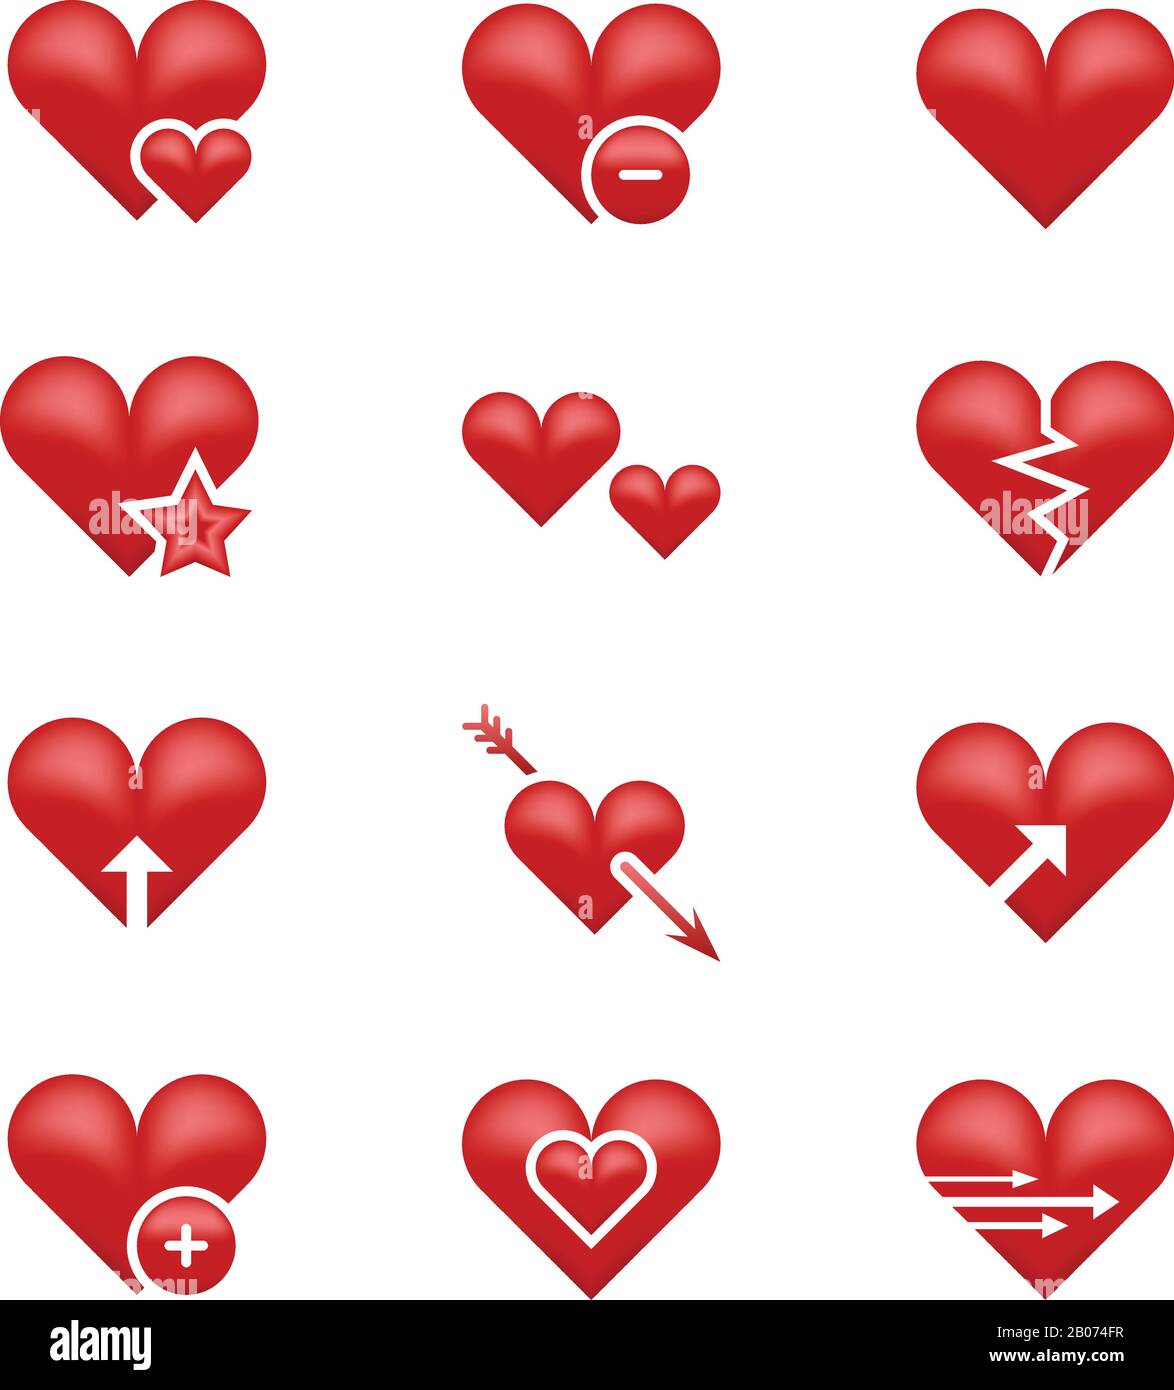 Set di emoticon, emoticon e emoticon vettoriali per l'amore del cuore. Illustrazione di cuore, freccia e stella rotta Illustrazione Vettoriale